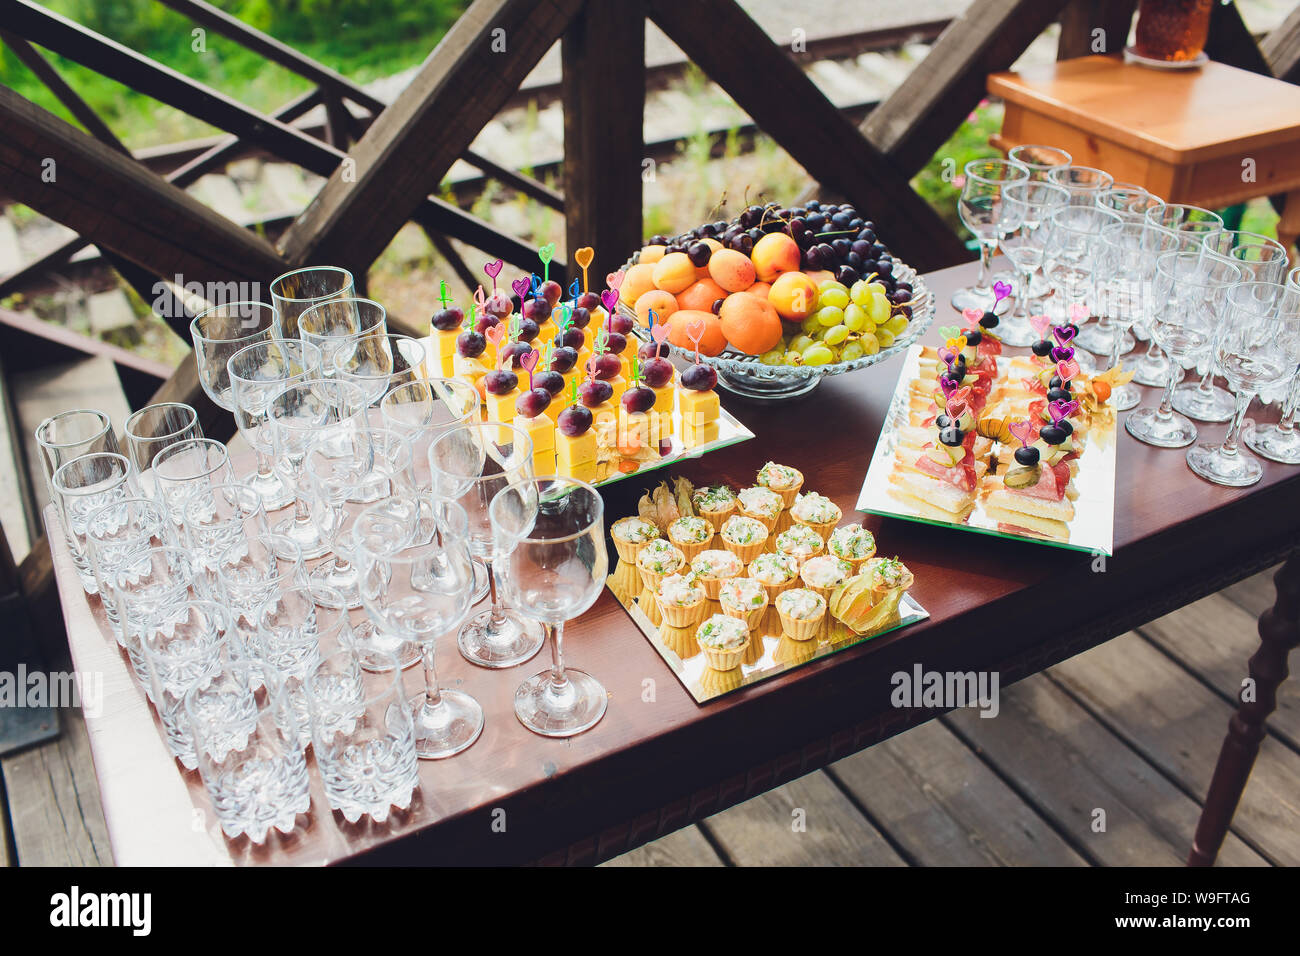 Belle table de buffet banquet Restauration décorée en style rustique dans  le jardin. Différentes collations, des sandwiches et des cocktails. Piscine  en plein air Photo Stock - Alamy